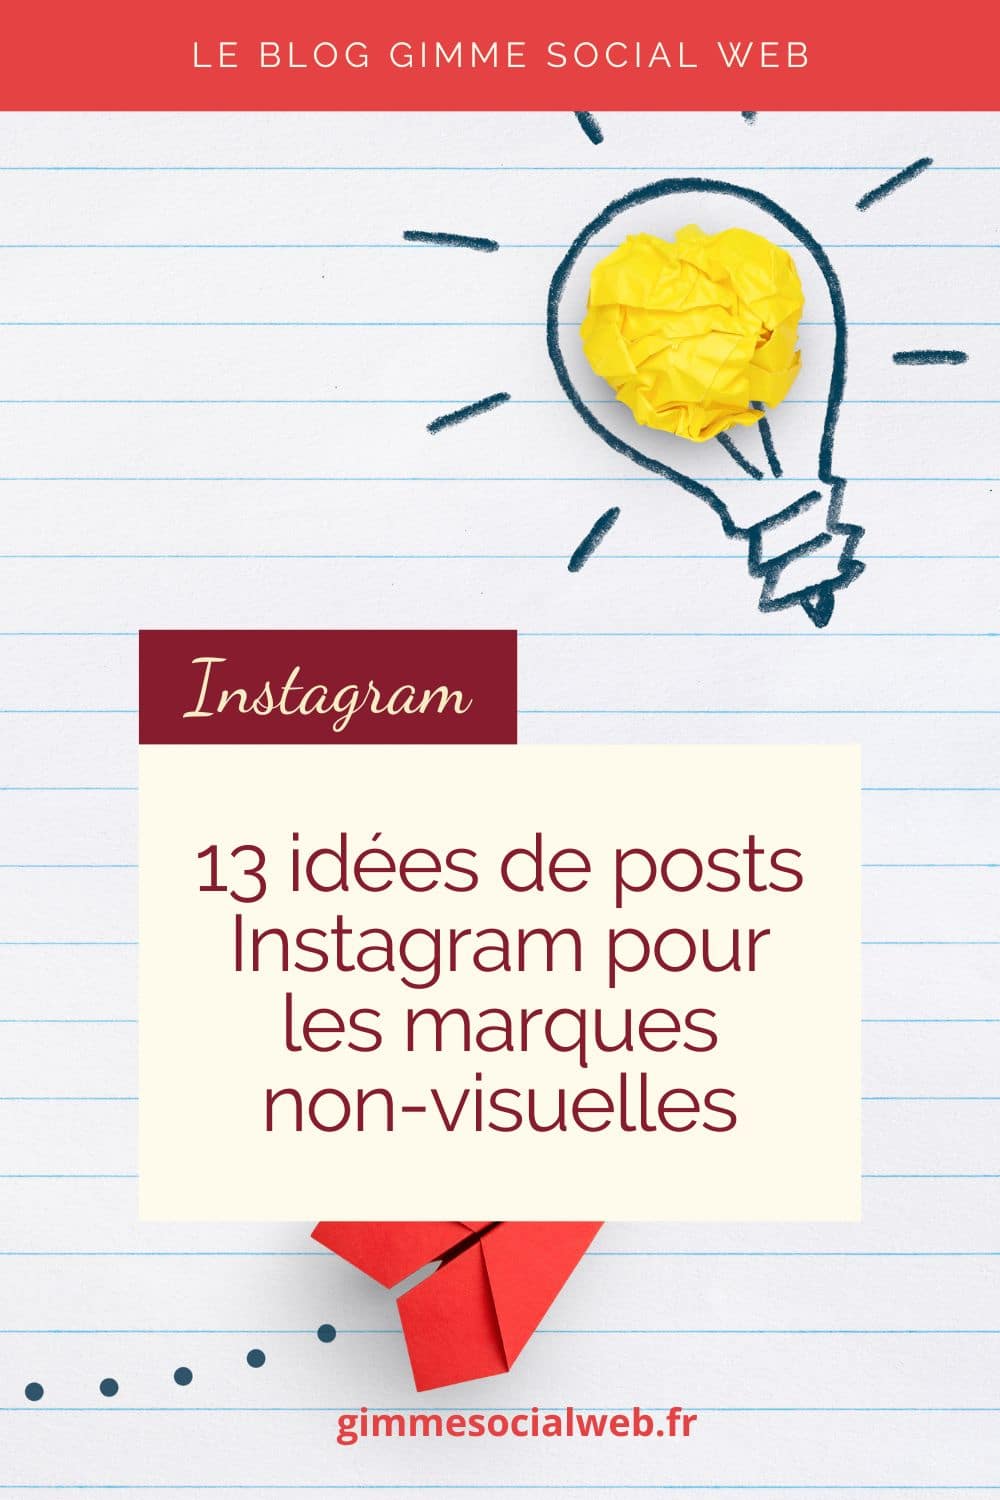 13 idées de posts Instagram pour marques non visuelles